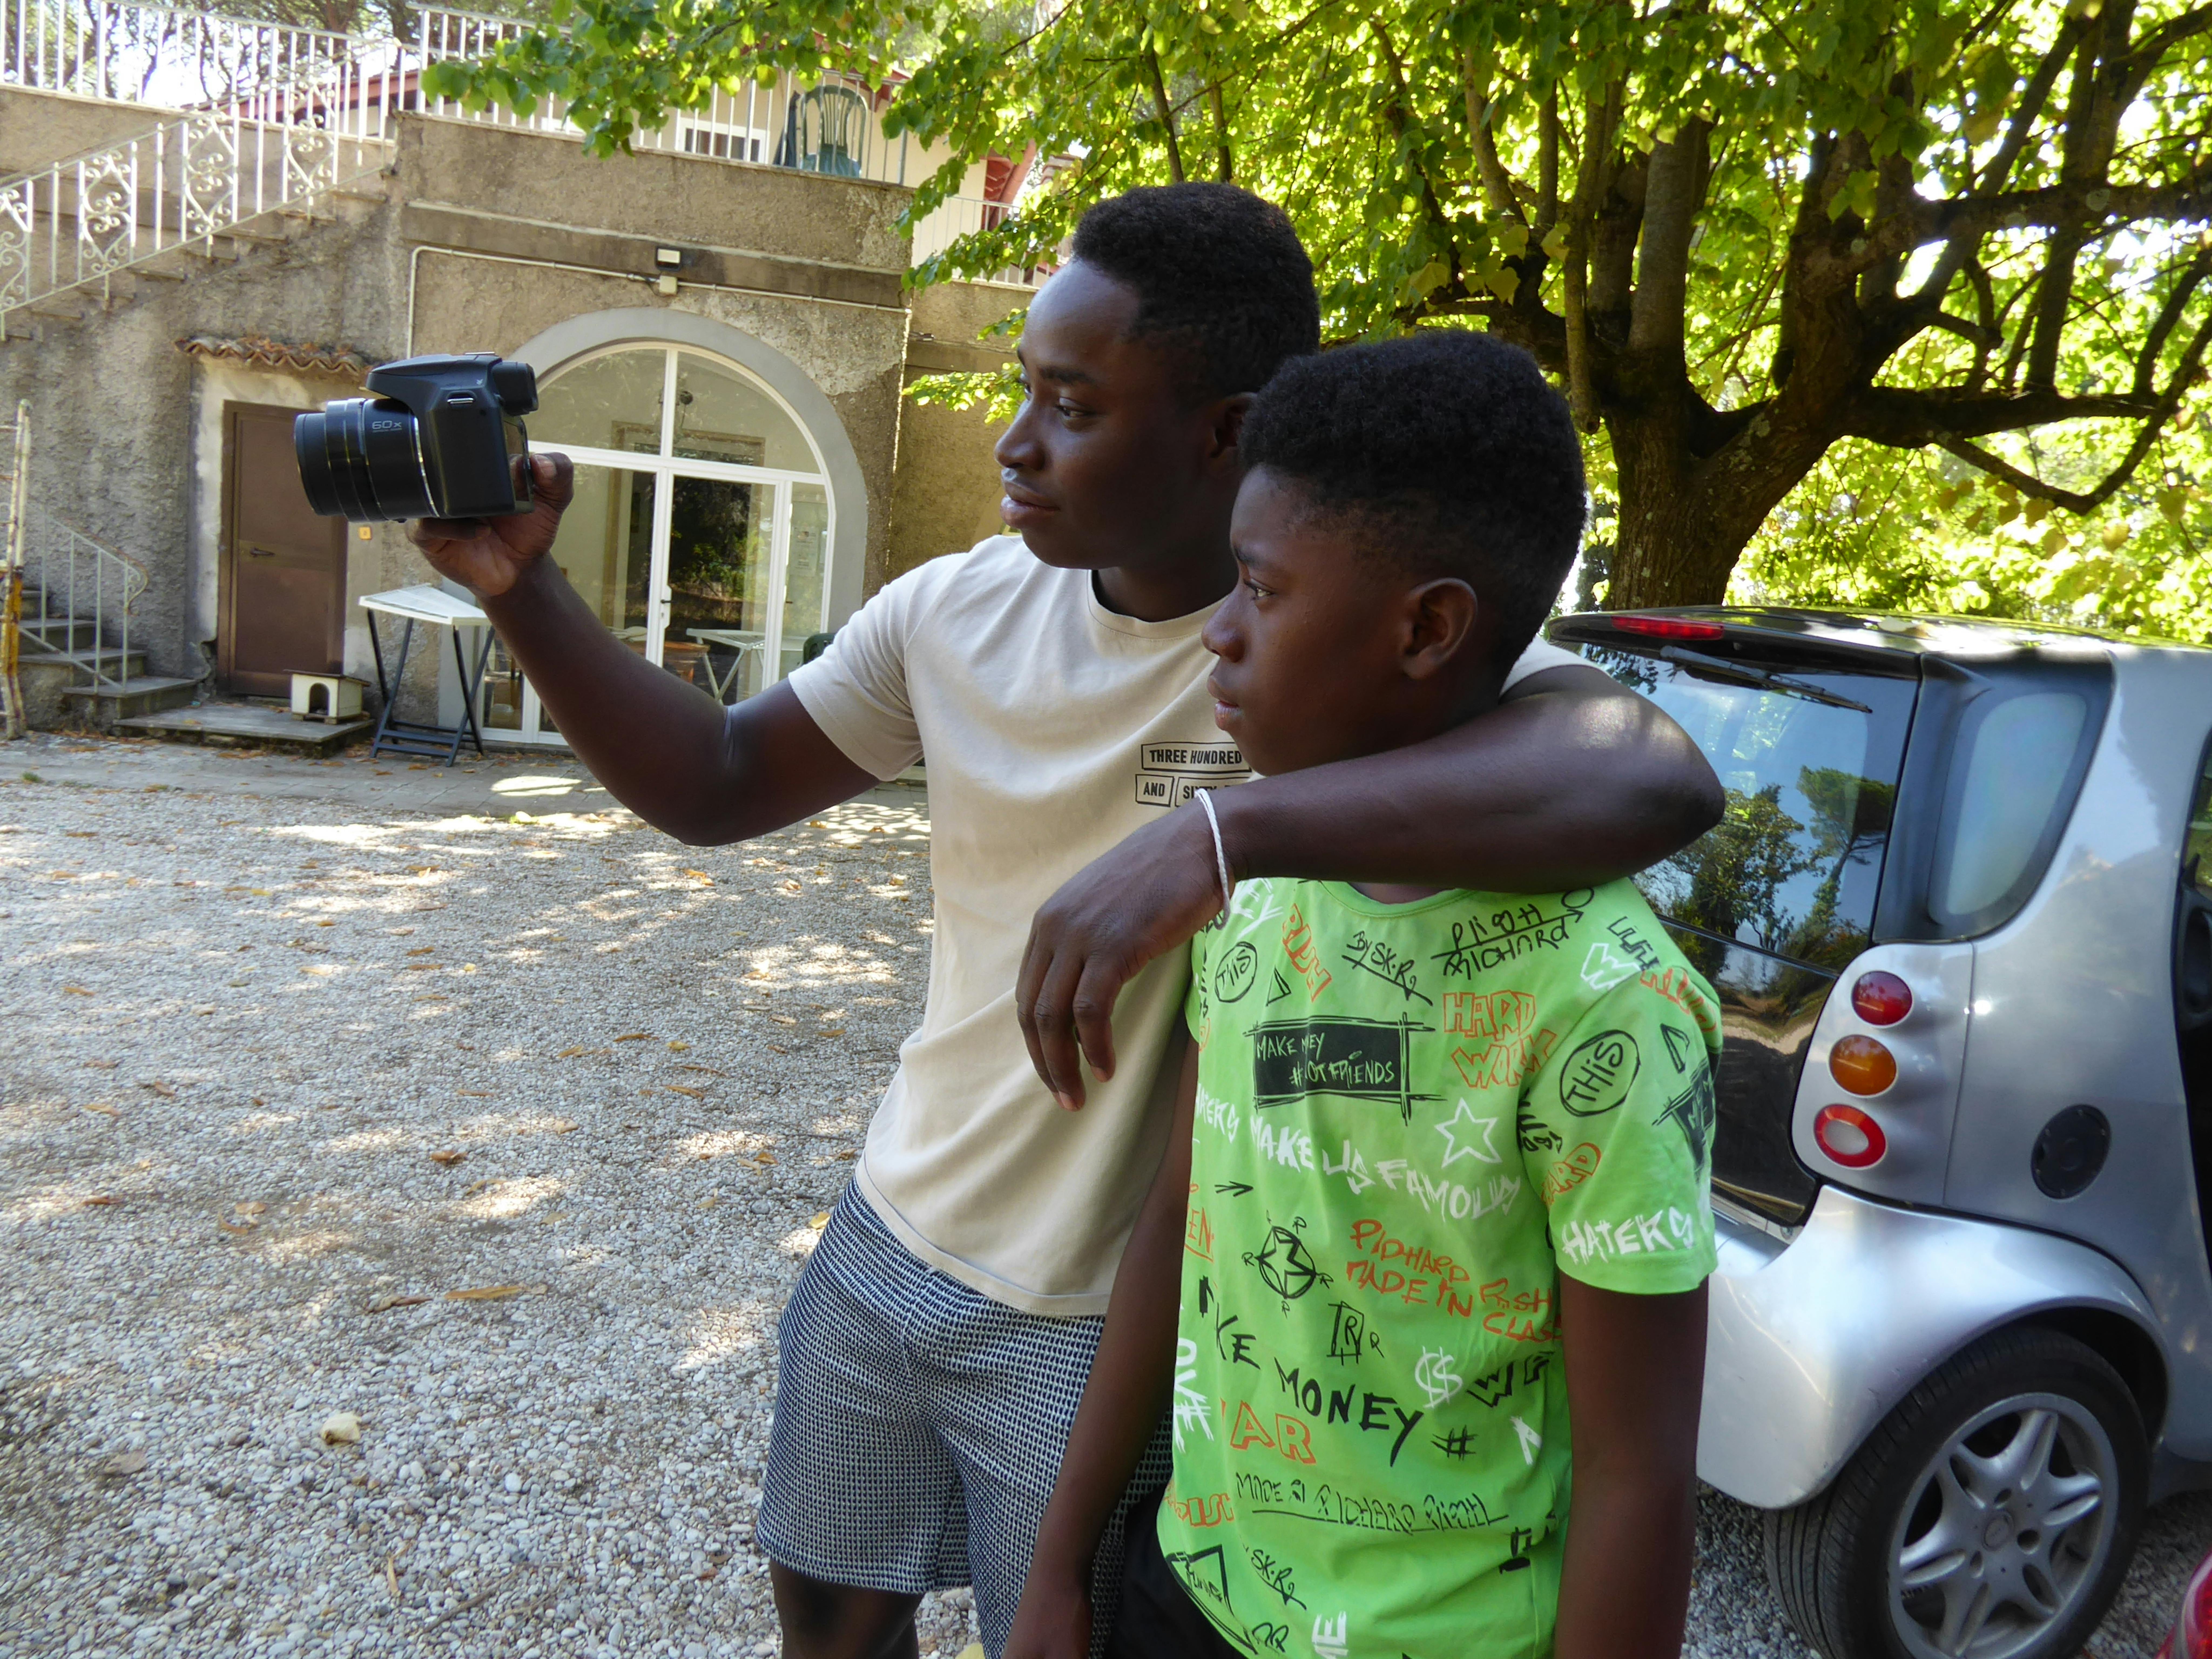 Mamoudou insieme al fratello guardano l'inquadratura della fotocamera